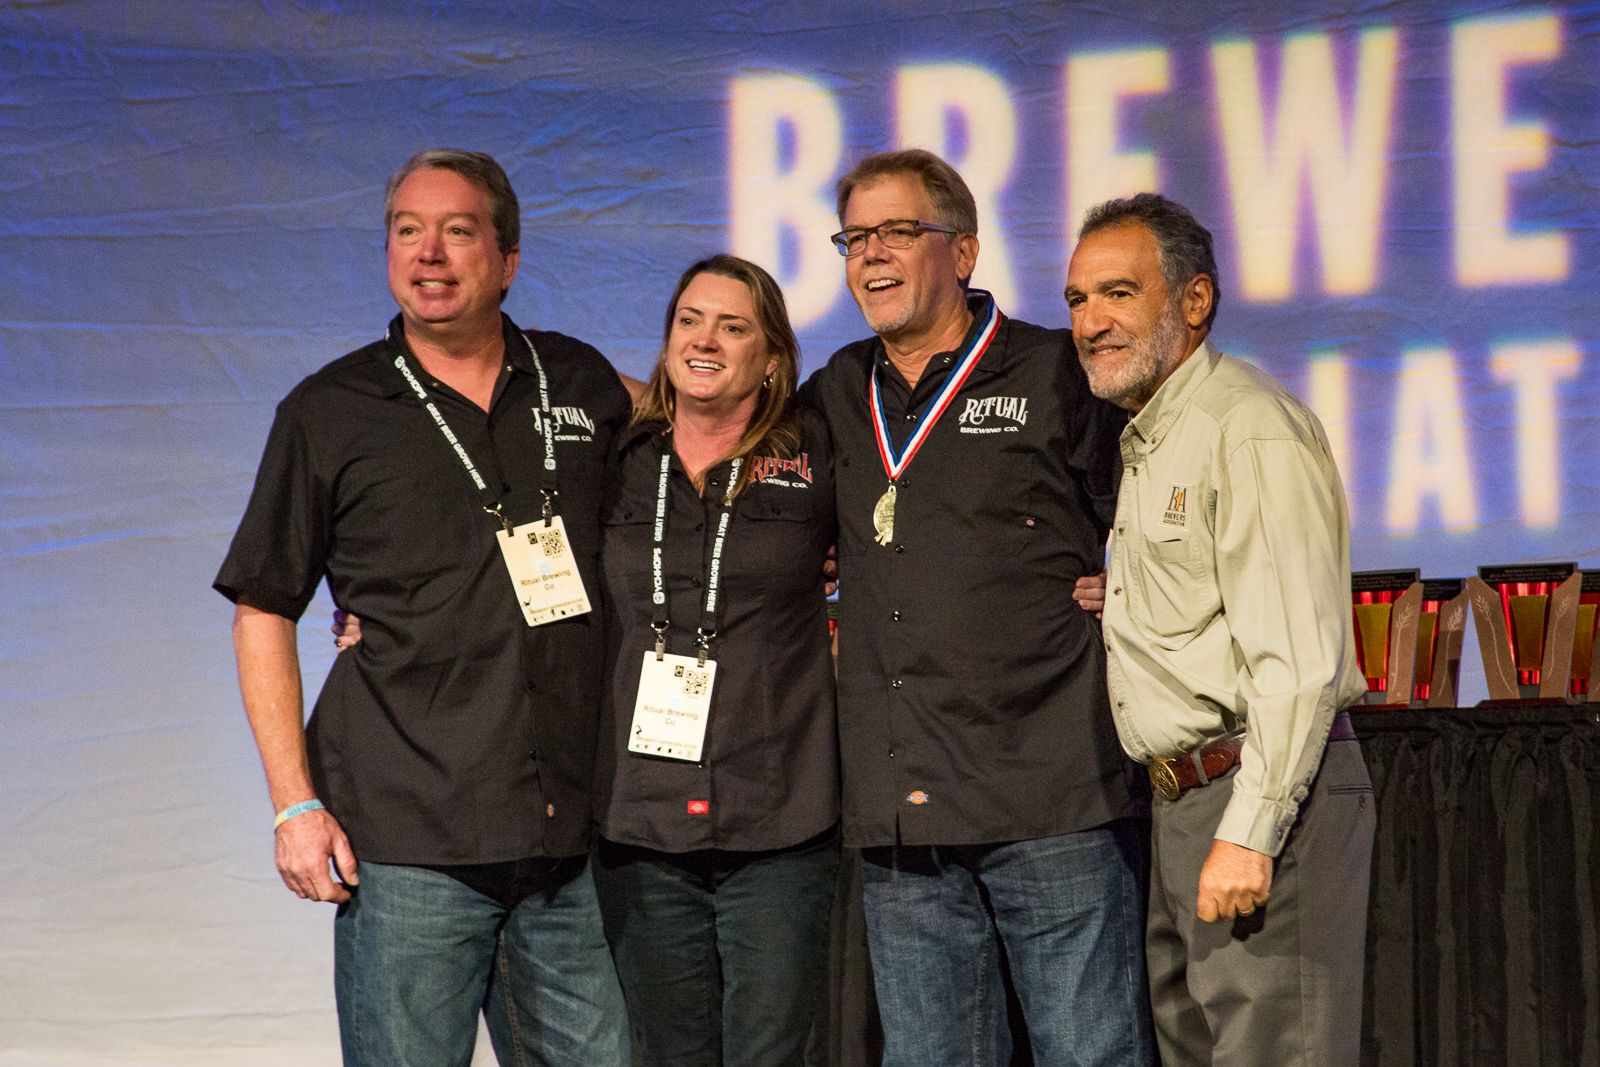 Ritual Brewing Company at GABF 2015